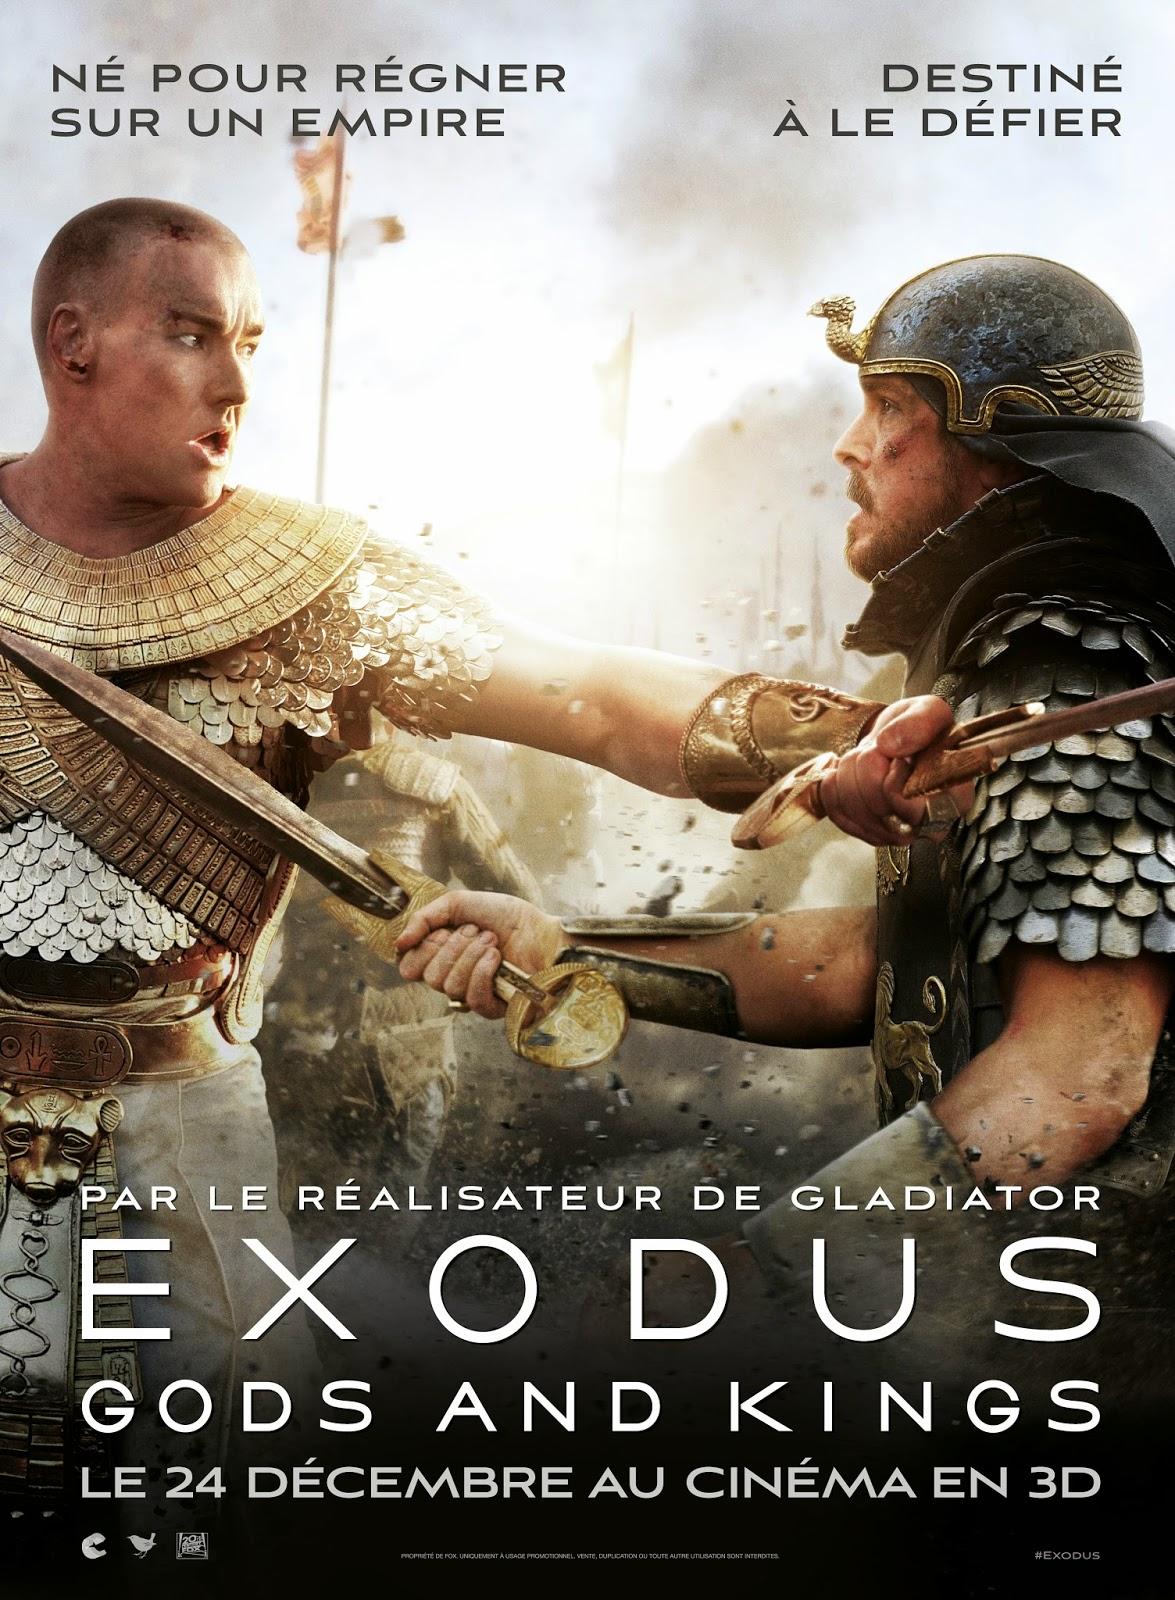 CINEMA: Exodus (2014), Des hommes et des dieux / Men and Gods